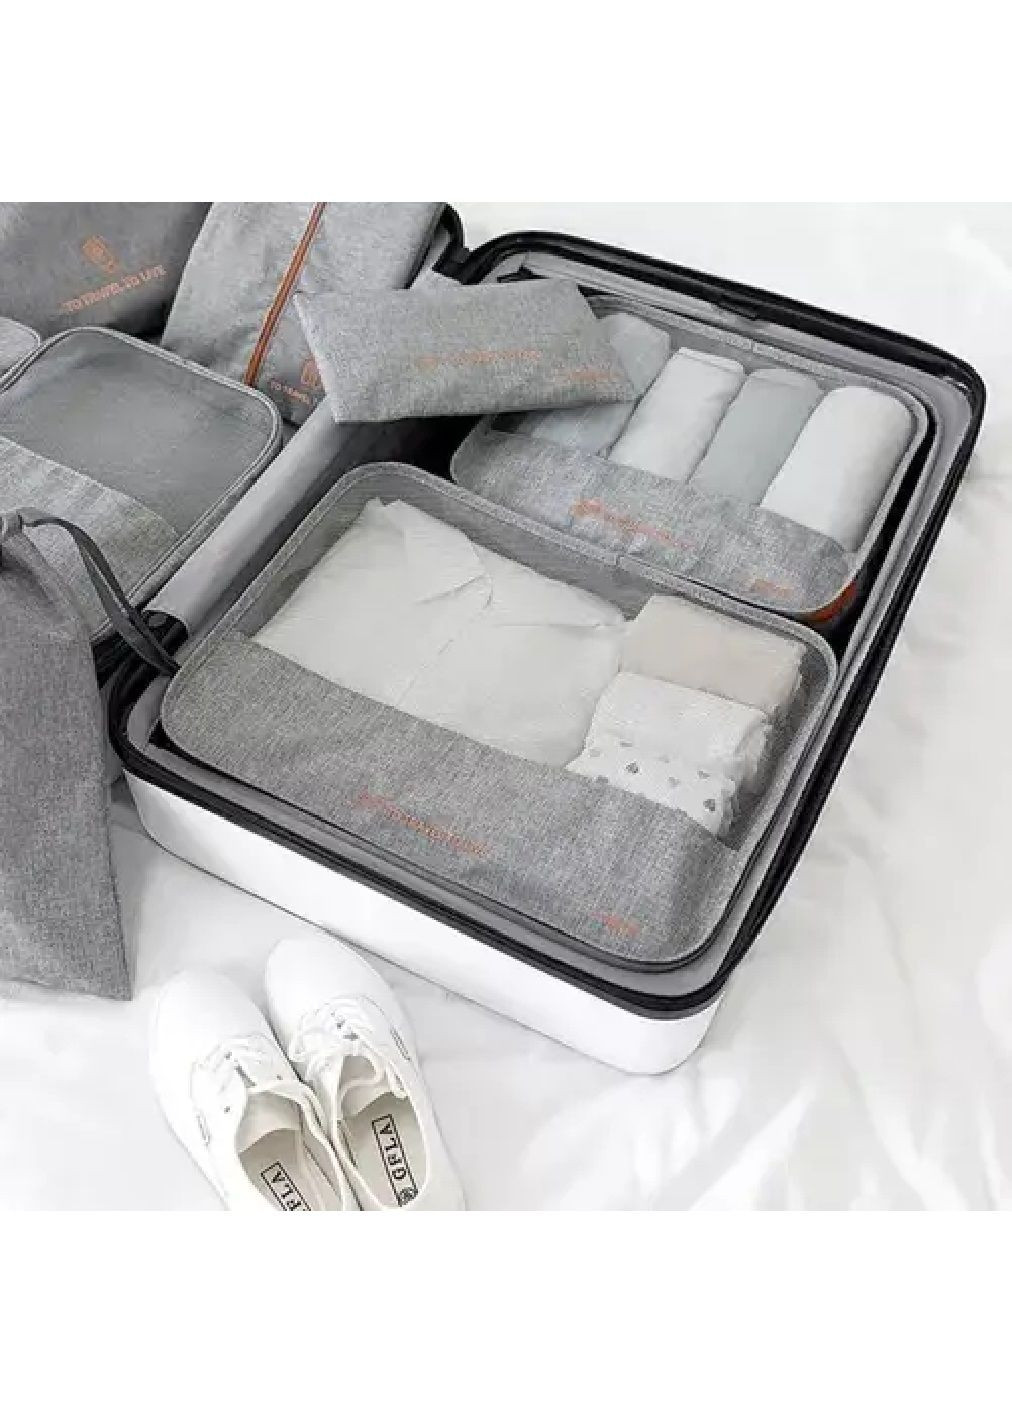 Набор комплект сумок органайзеров туристических для хранения вещей одежды белья в чемодане 7 штук (476845-Prob) Серый Unbranded (291984577)